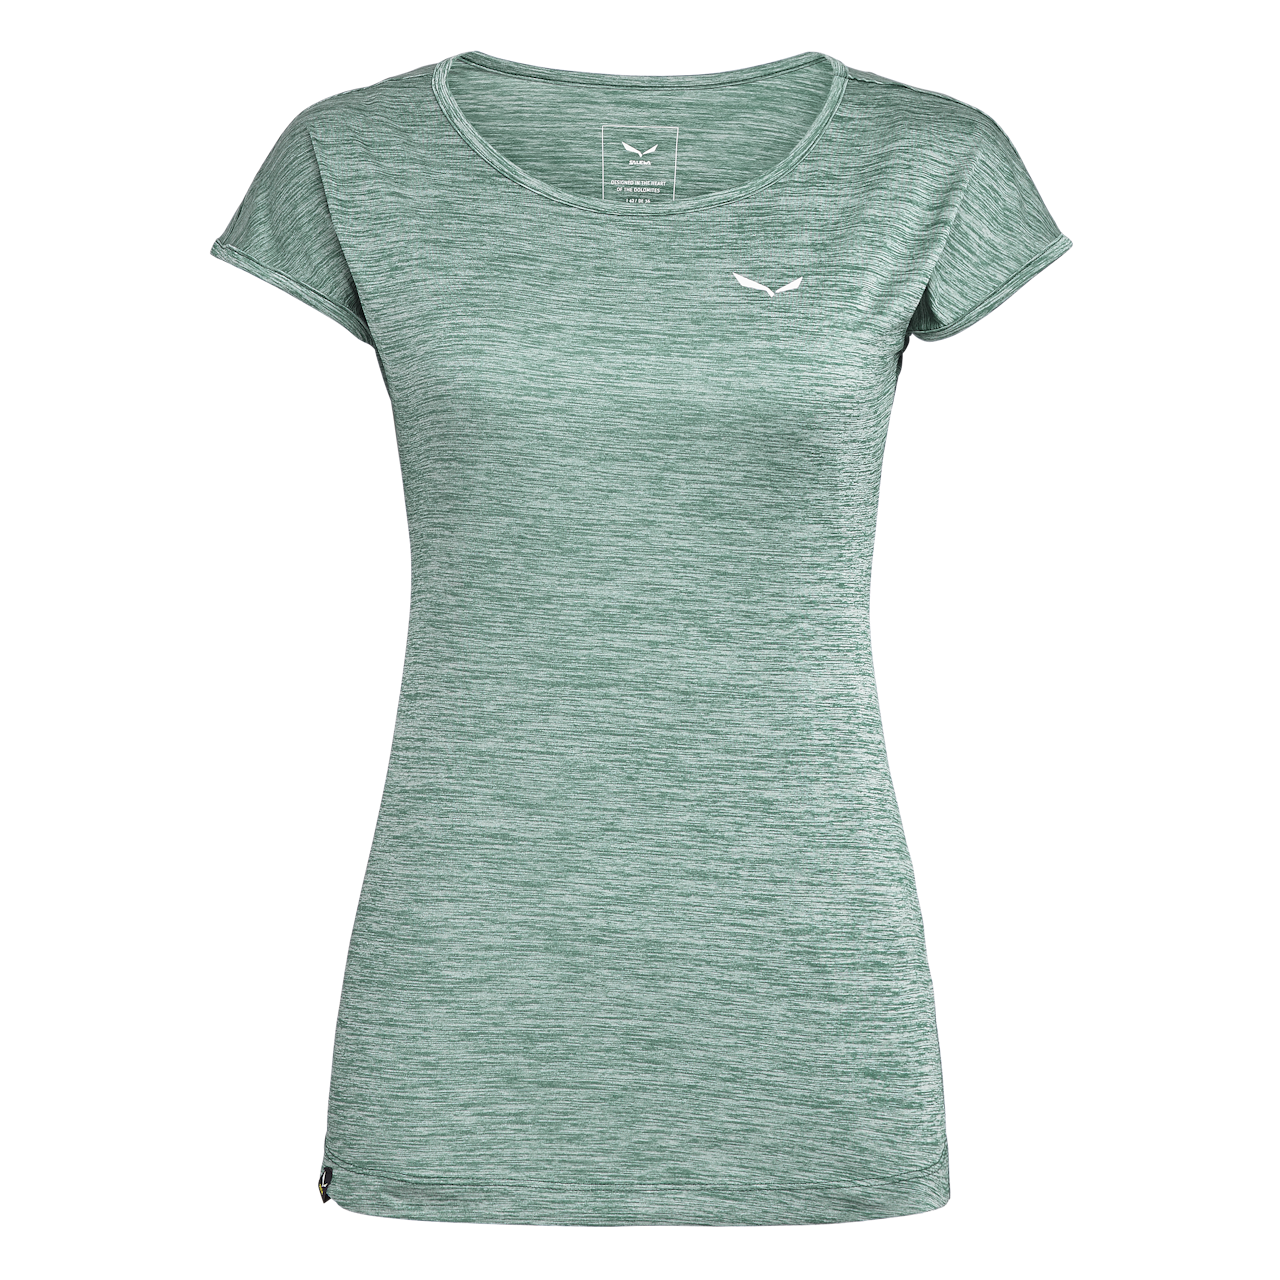 Puez Melange Dry Women's T-Shirt